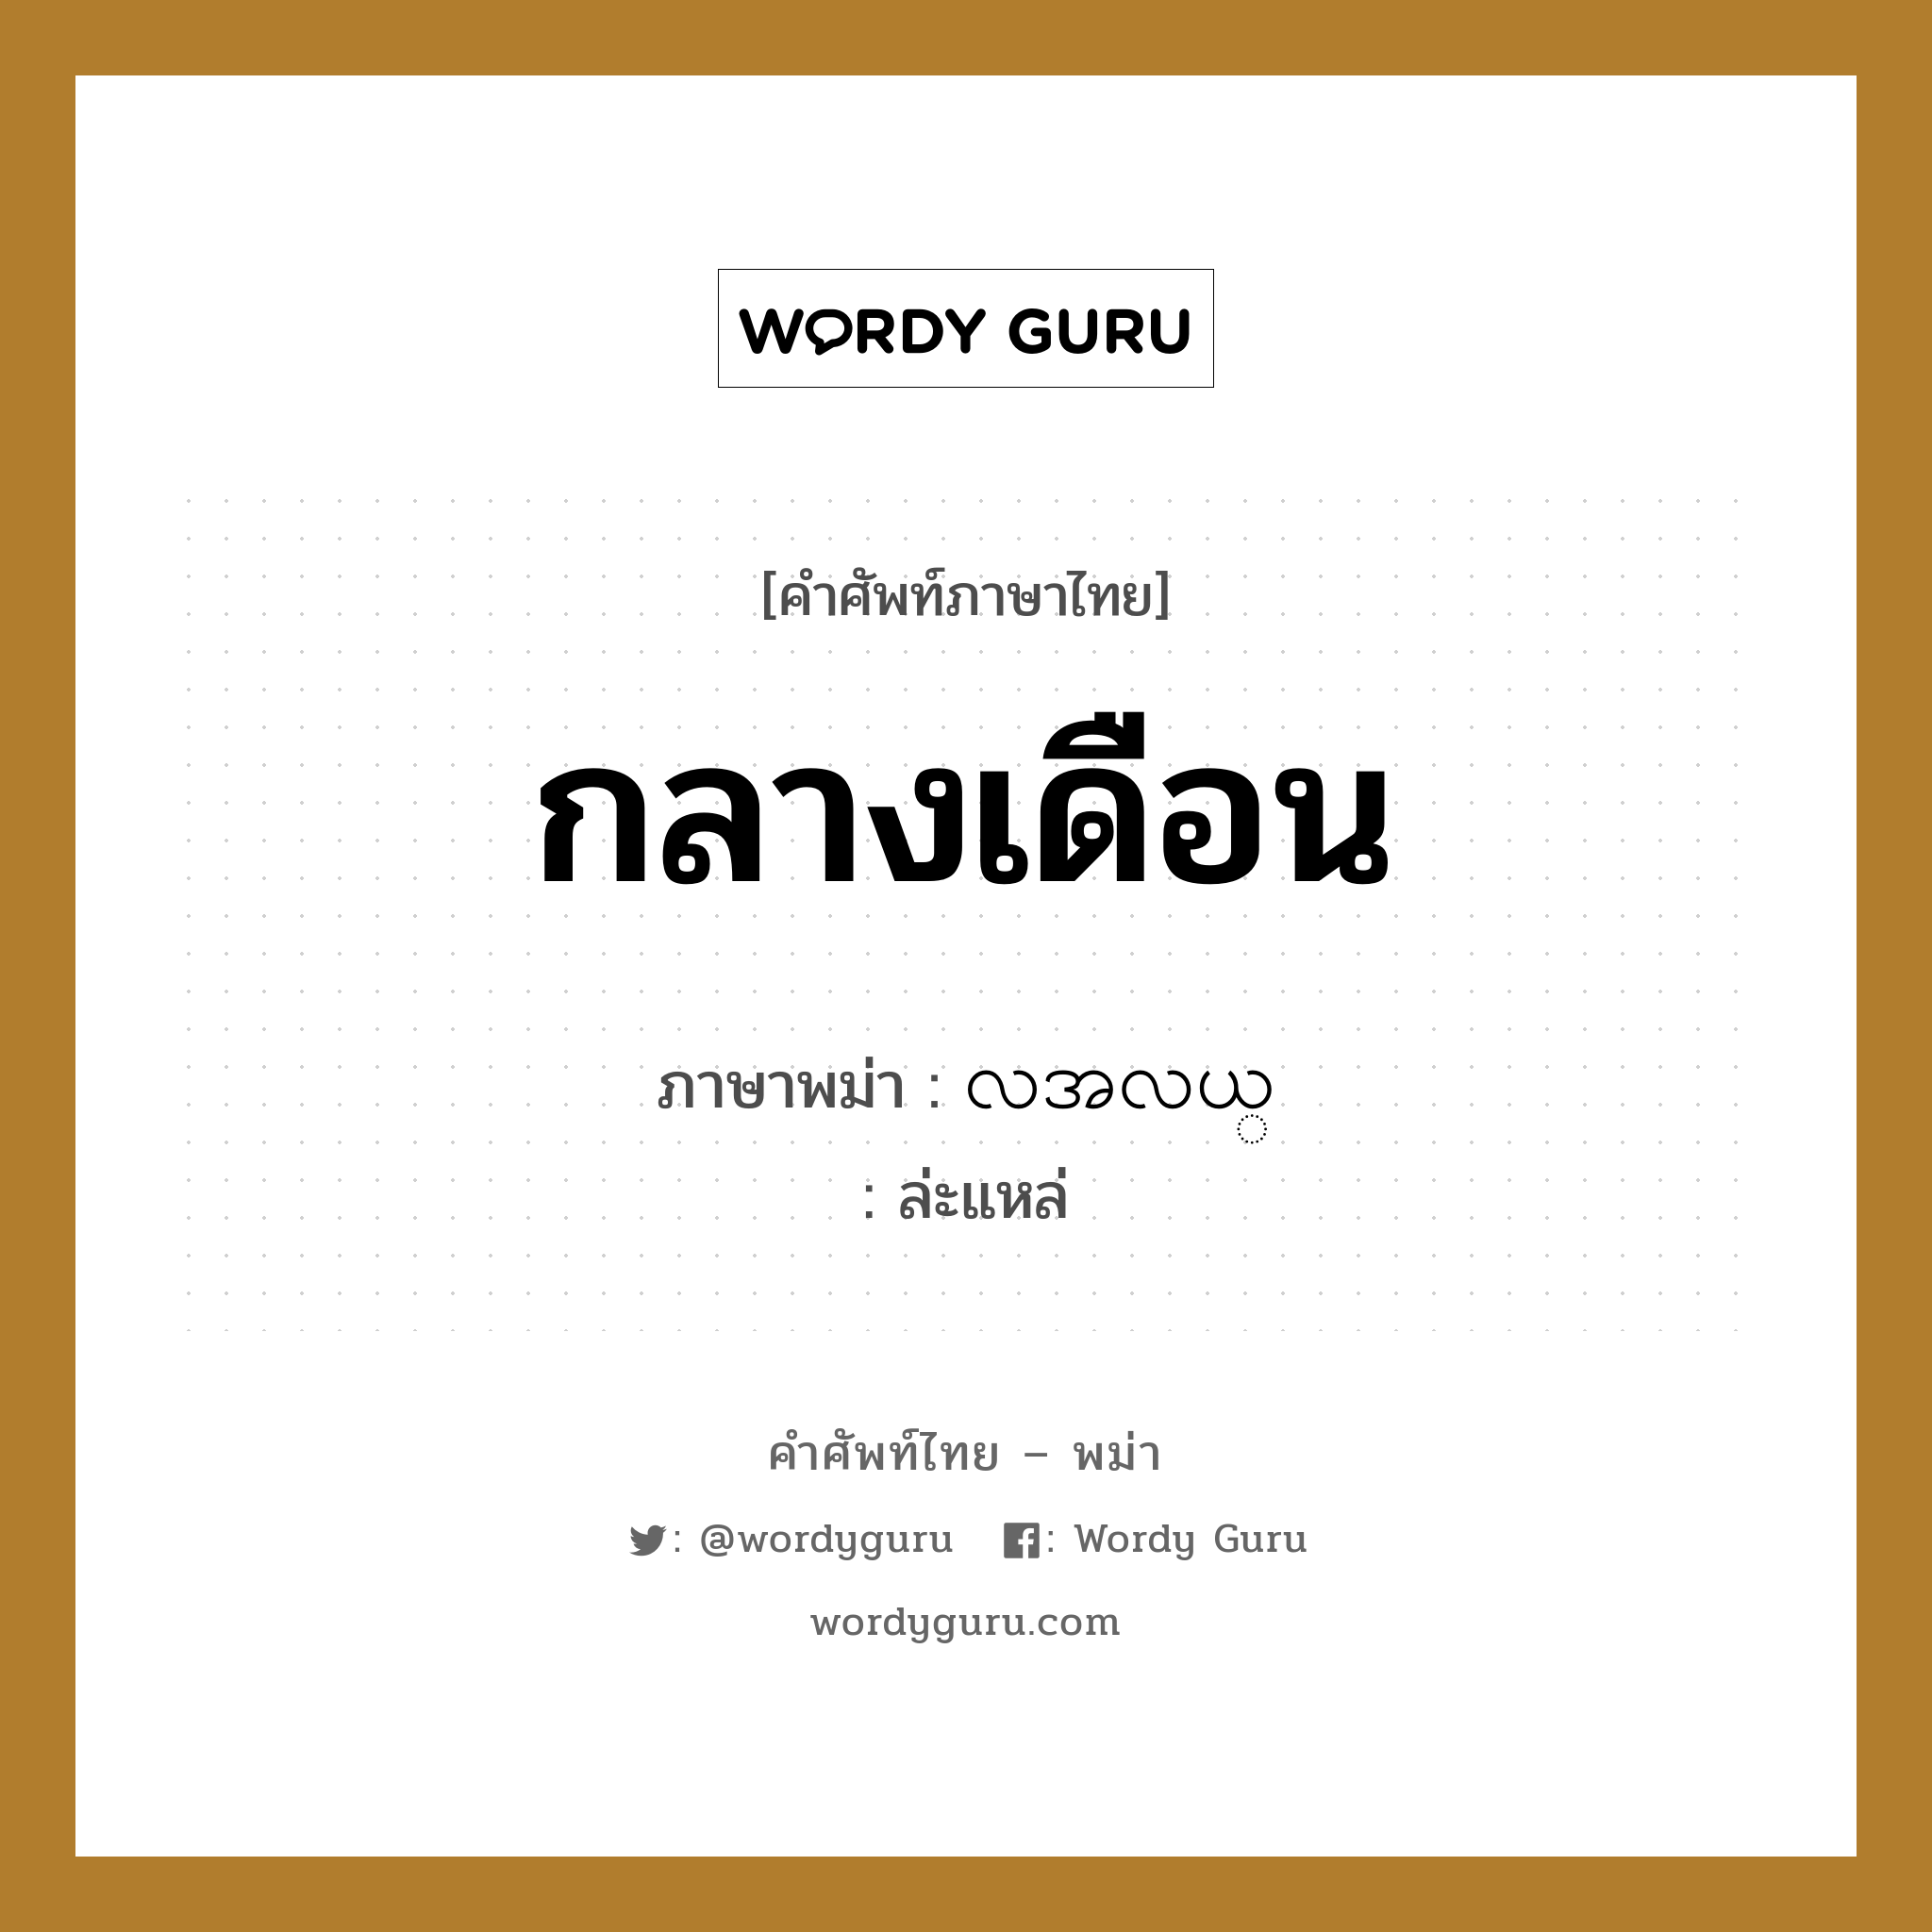 กลางเดือน ภาษาพม่าคืออะไร, คำศัพท์ภาษาไทย - พม่า กลางเดือน ภาษาพม่า လအလယ္ หมวด หมวดวัน เดือน ปี ล่ะแหล่ หมวด หมวดวัน เดือน ปี